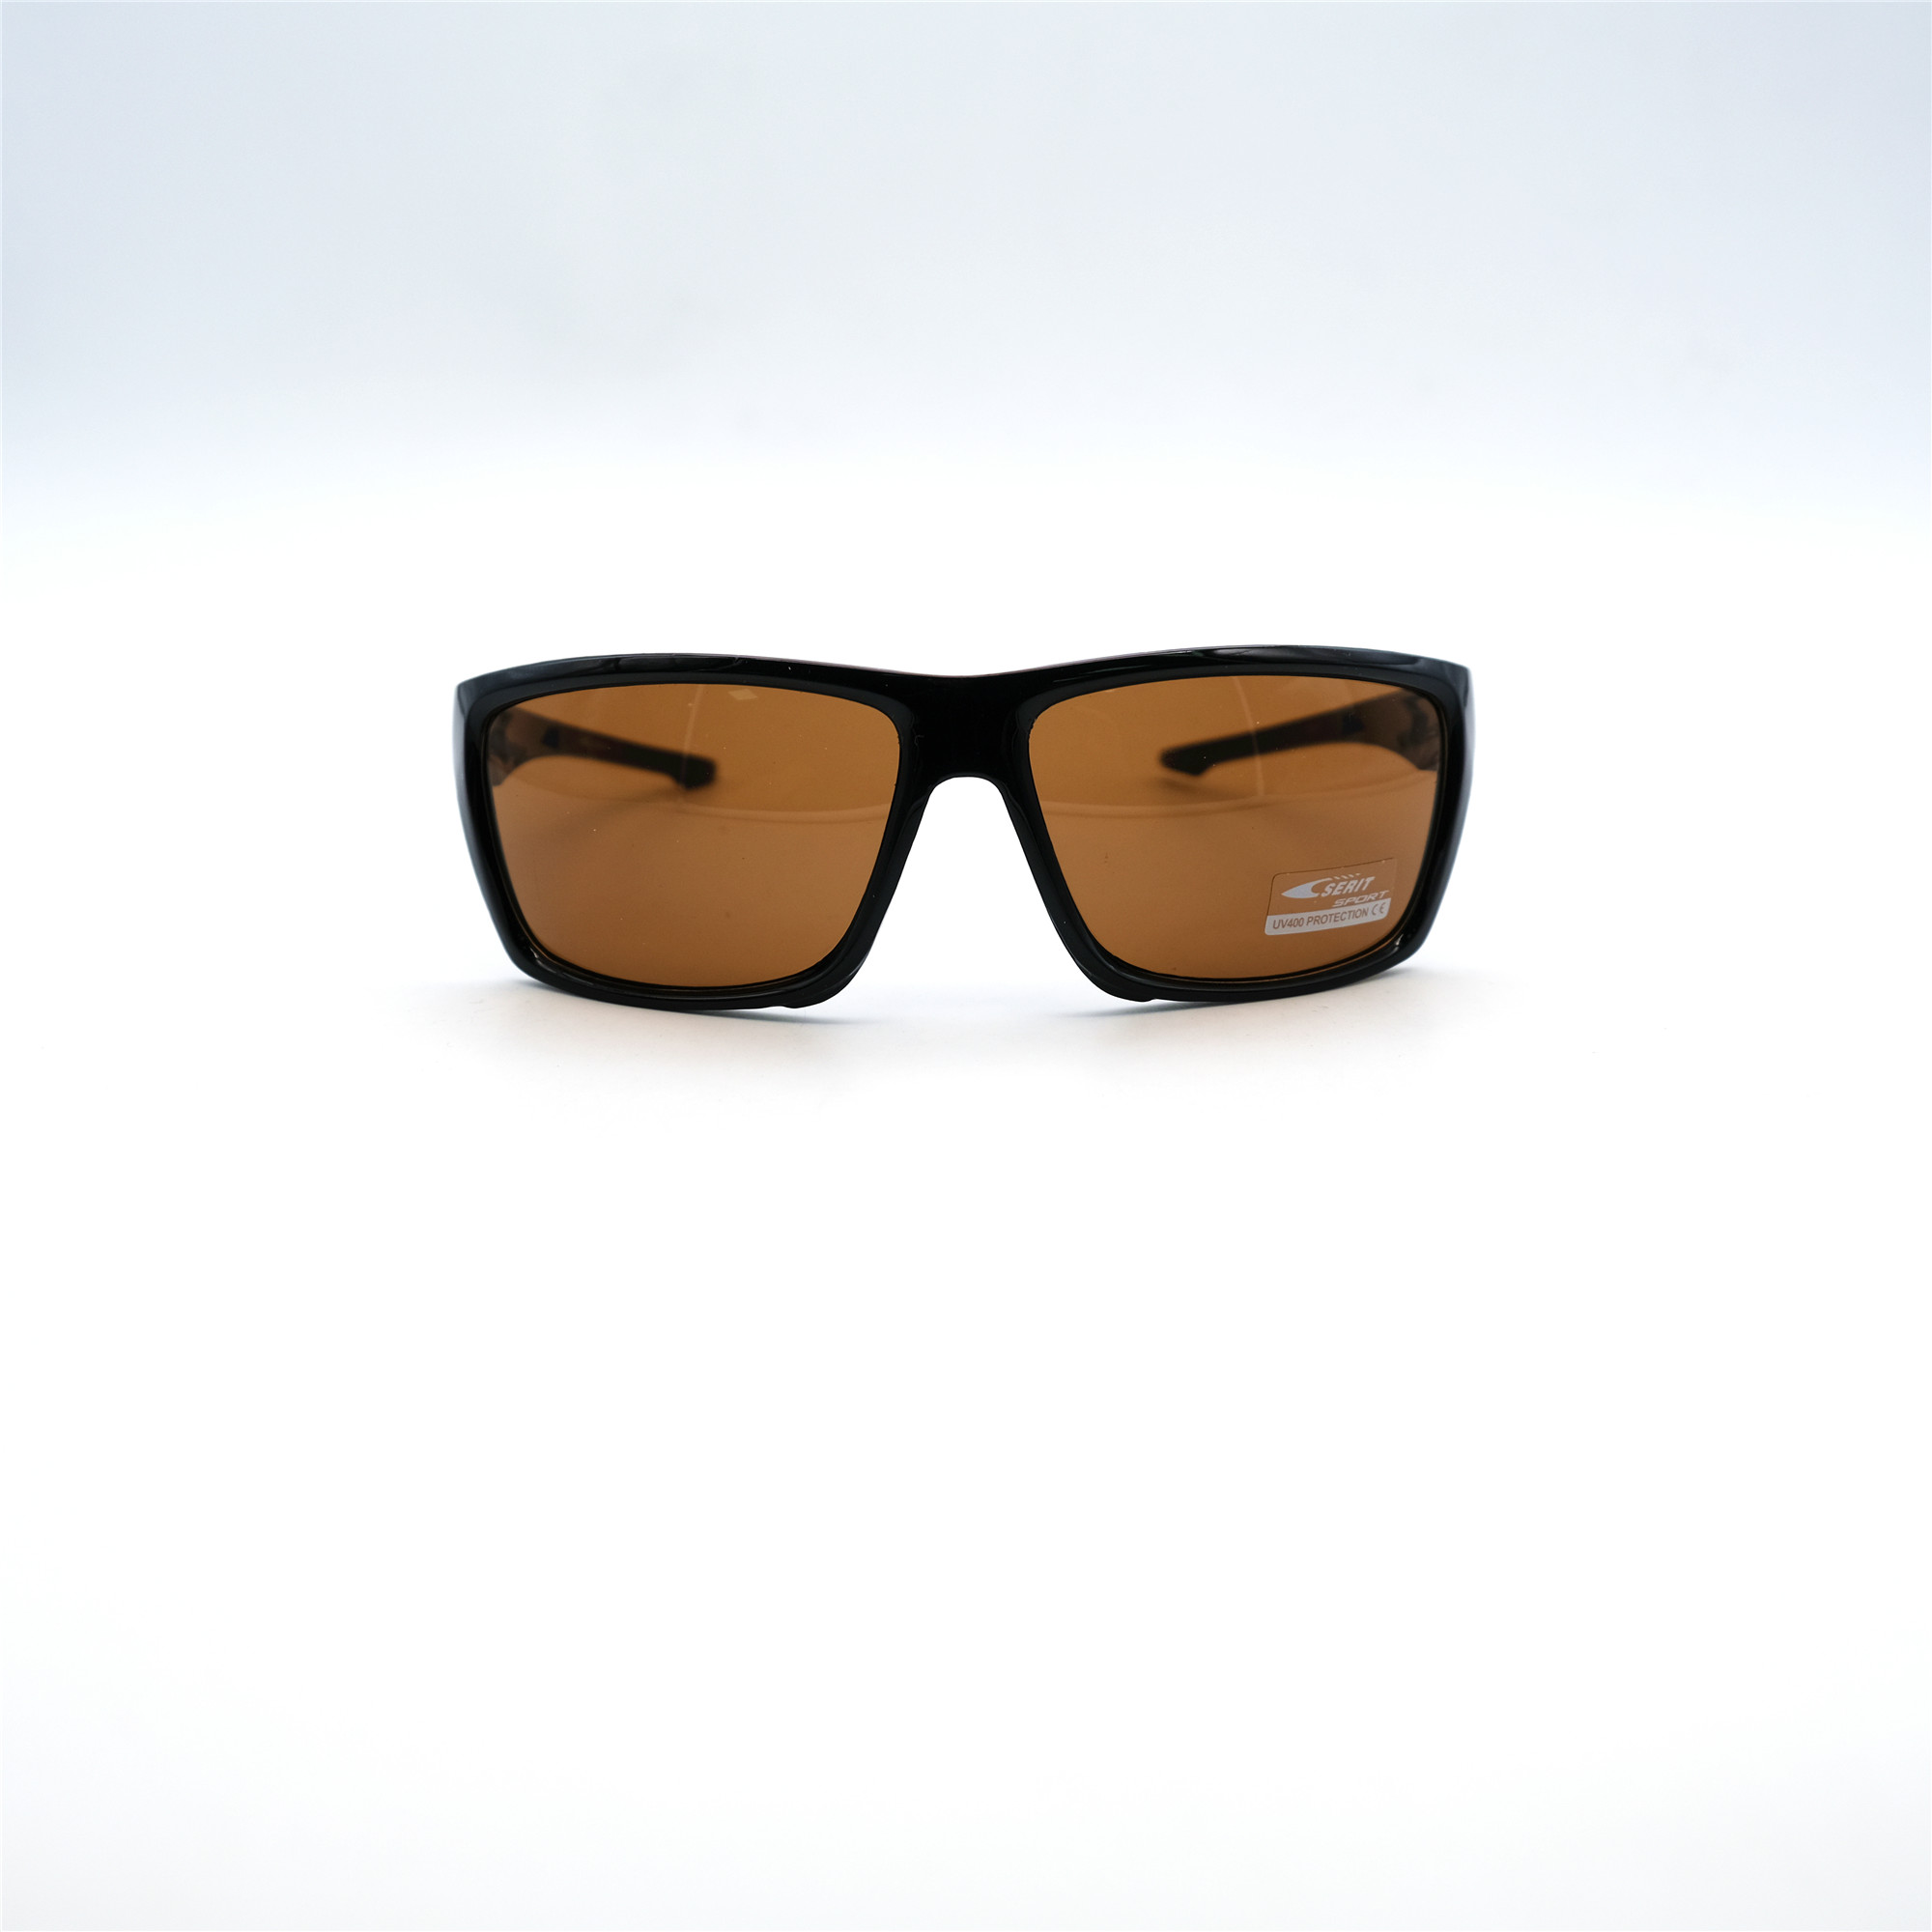  Солнцезащитные очки картинка Мужские Serit  Спорт S317-C2 